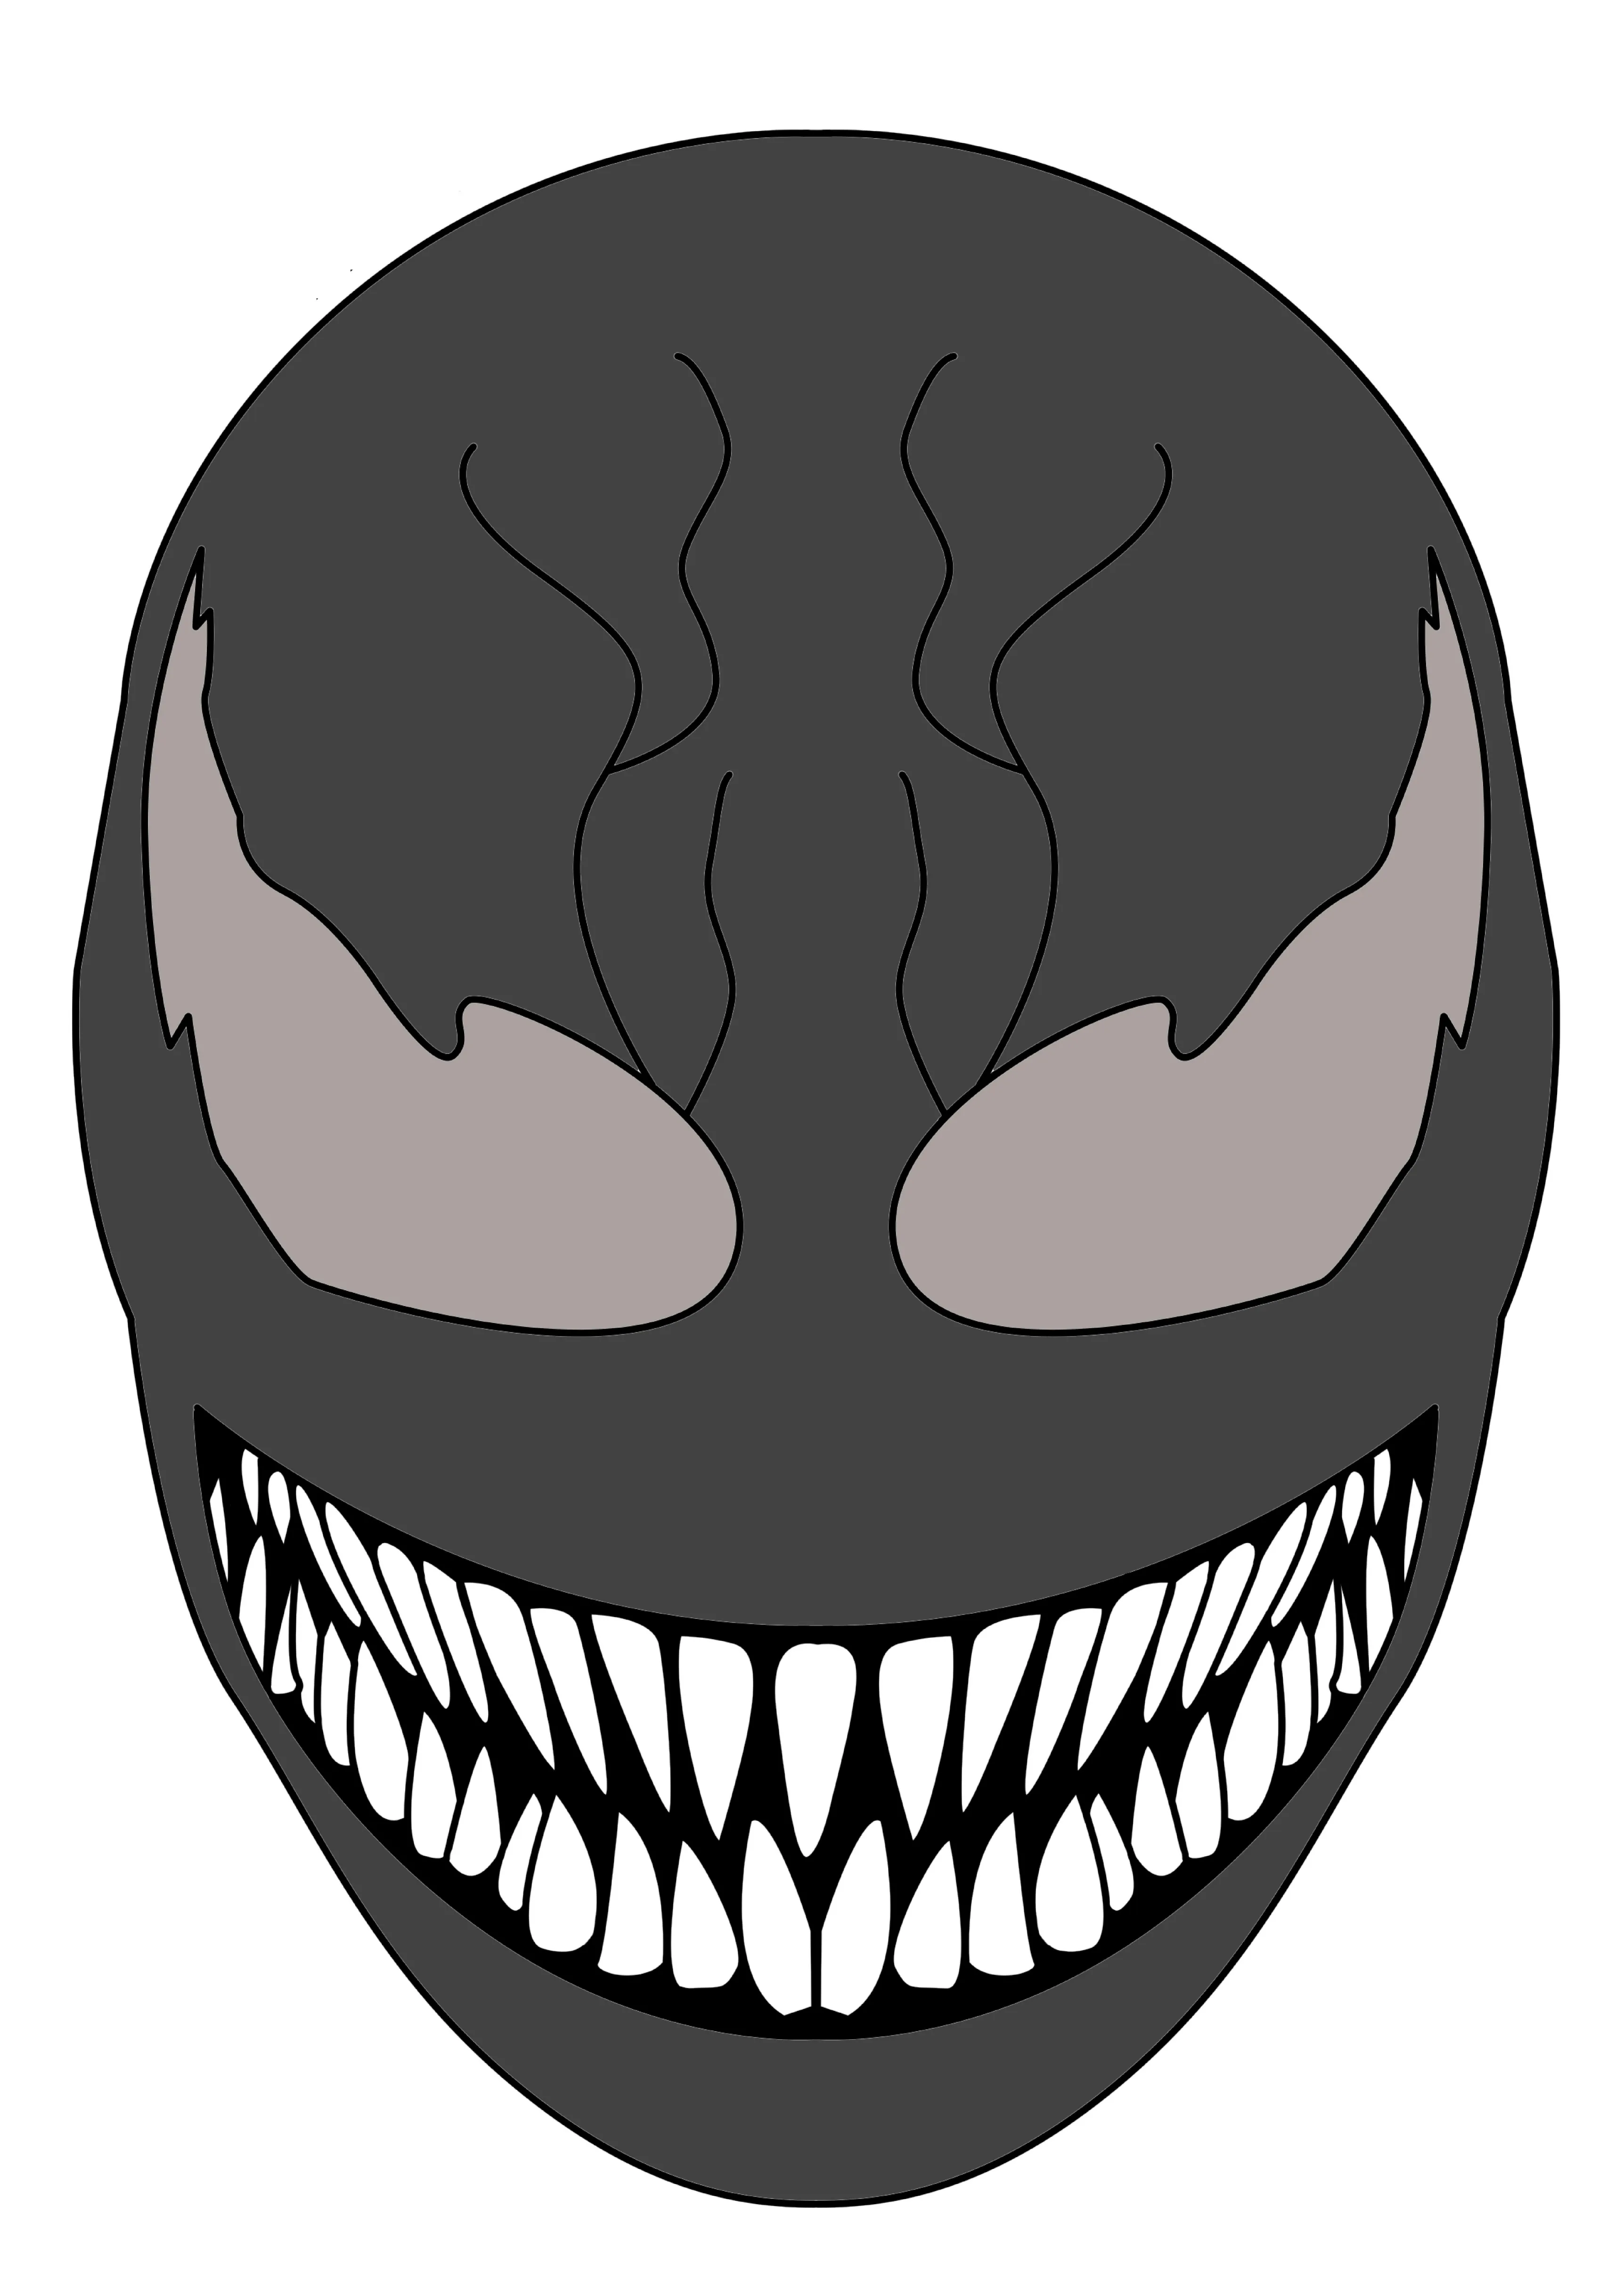 Máscara Venom para imprimir